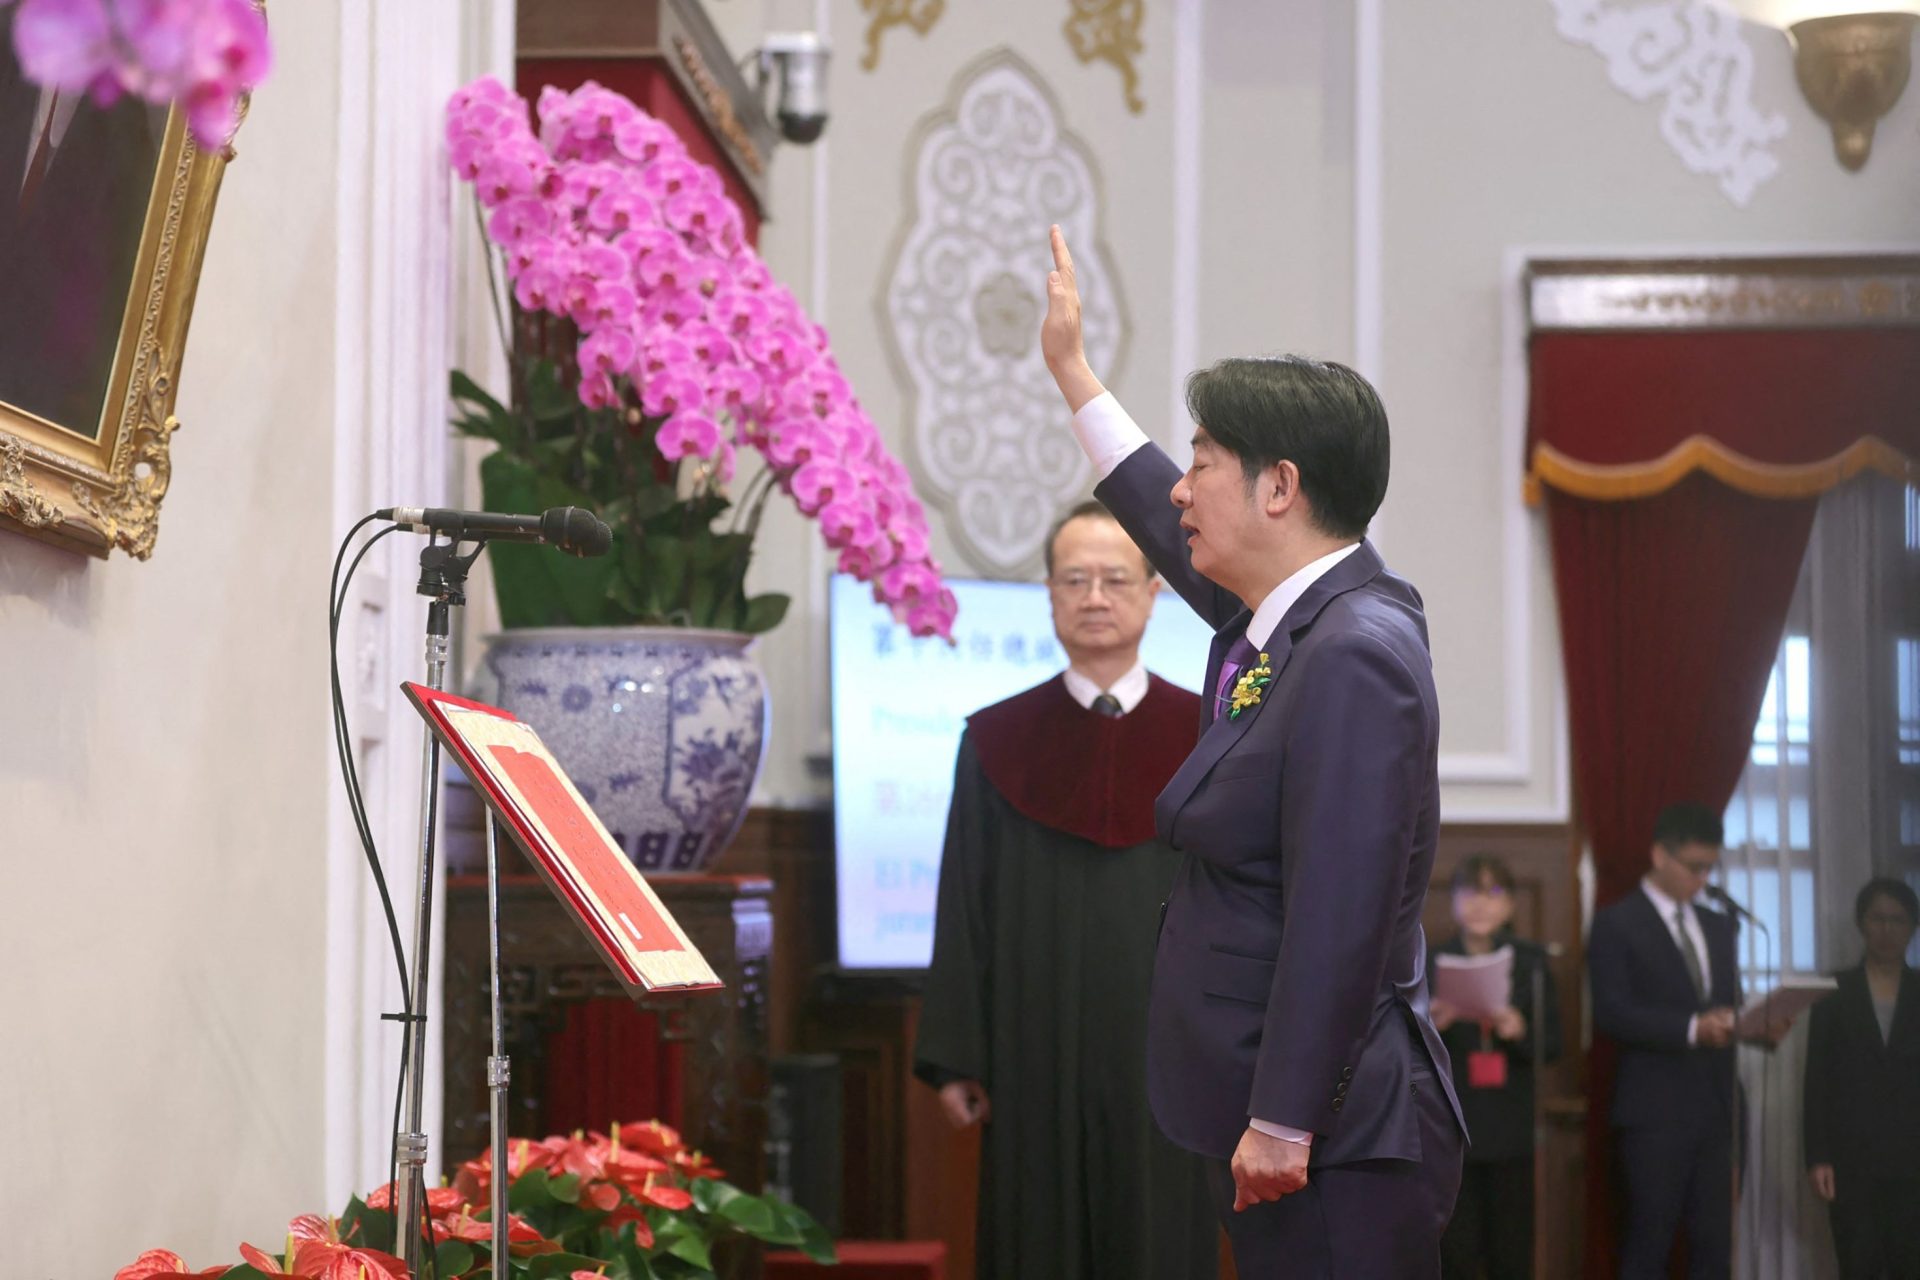 Le nouveau président taïwanais prête serment et adresse message à Pékin